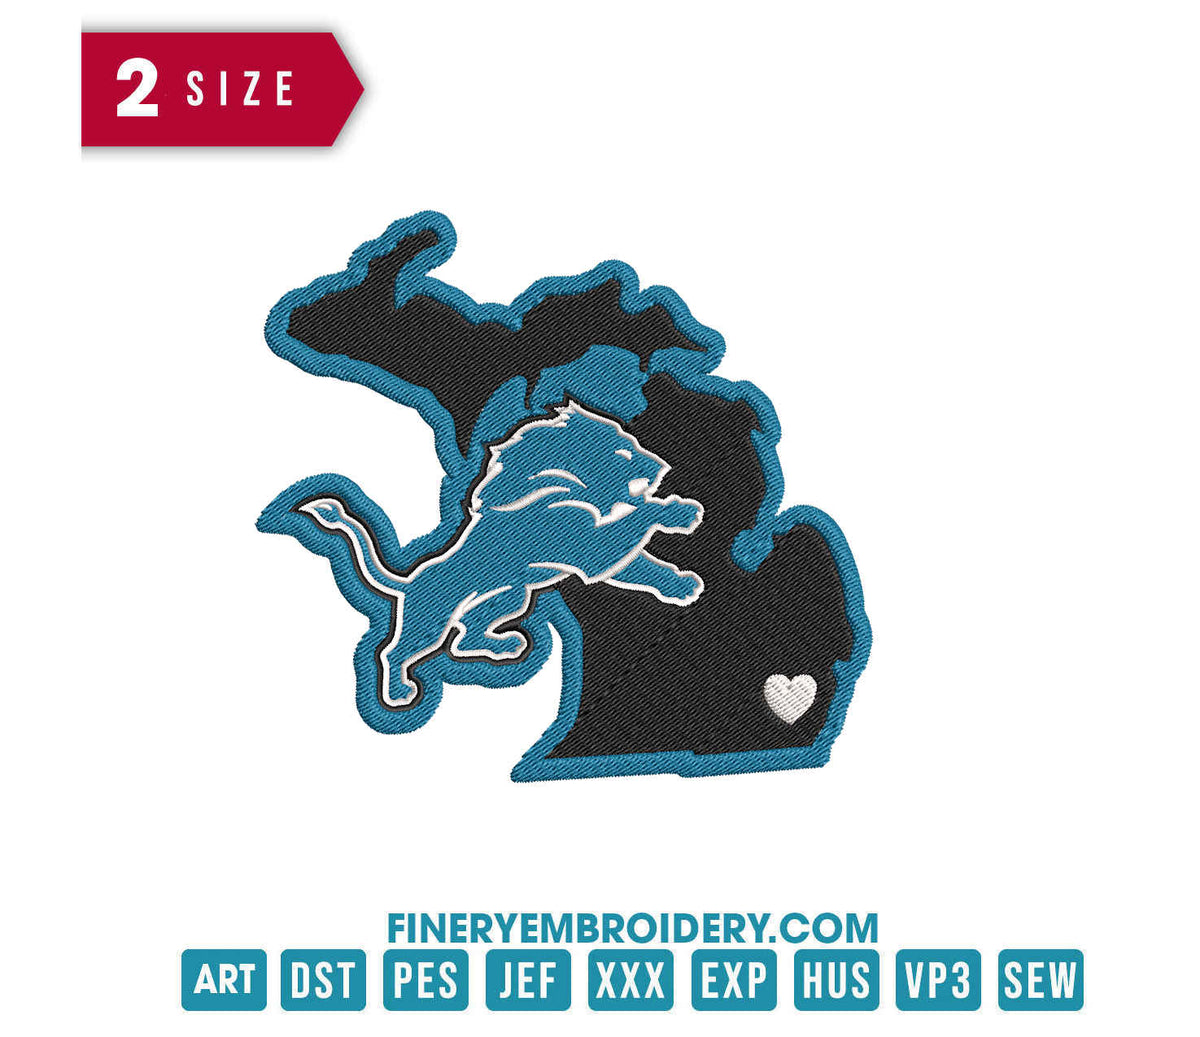 Detroit Lions 7 : Embroidery Design